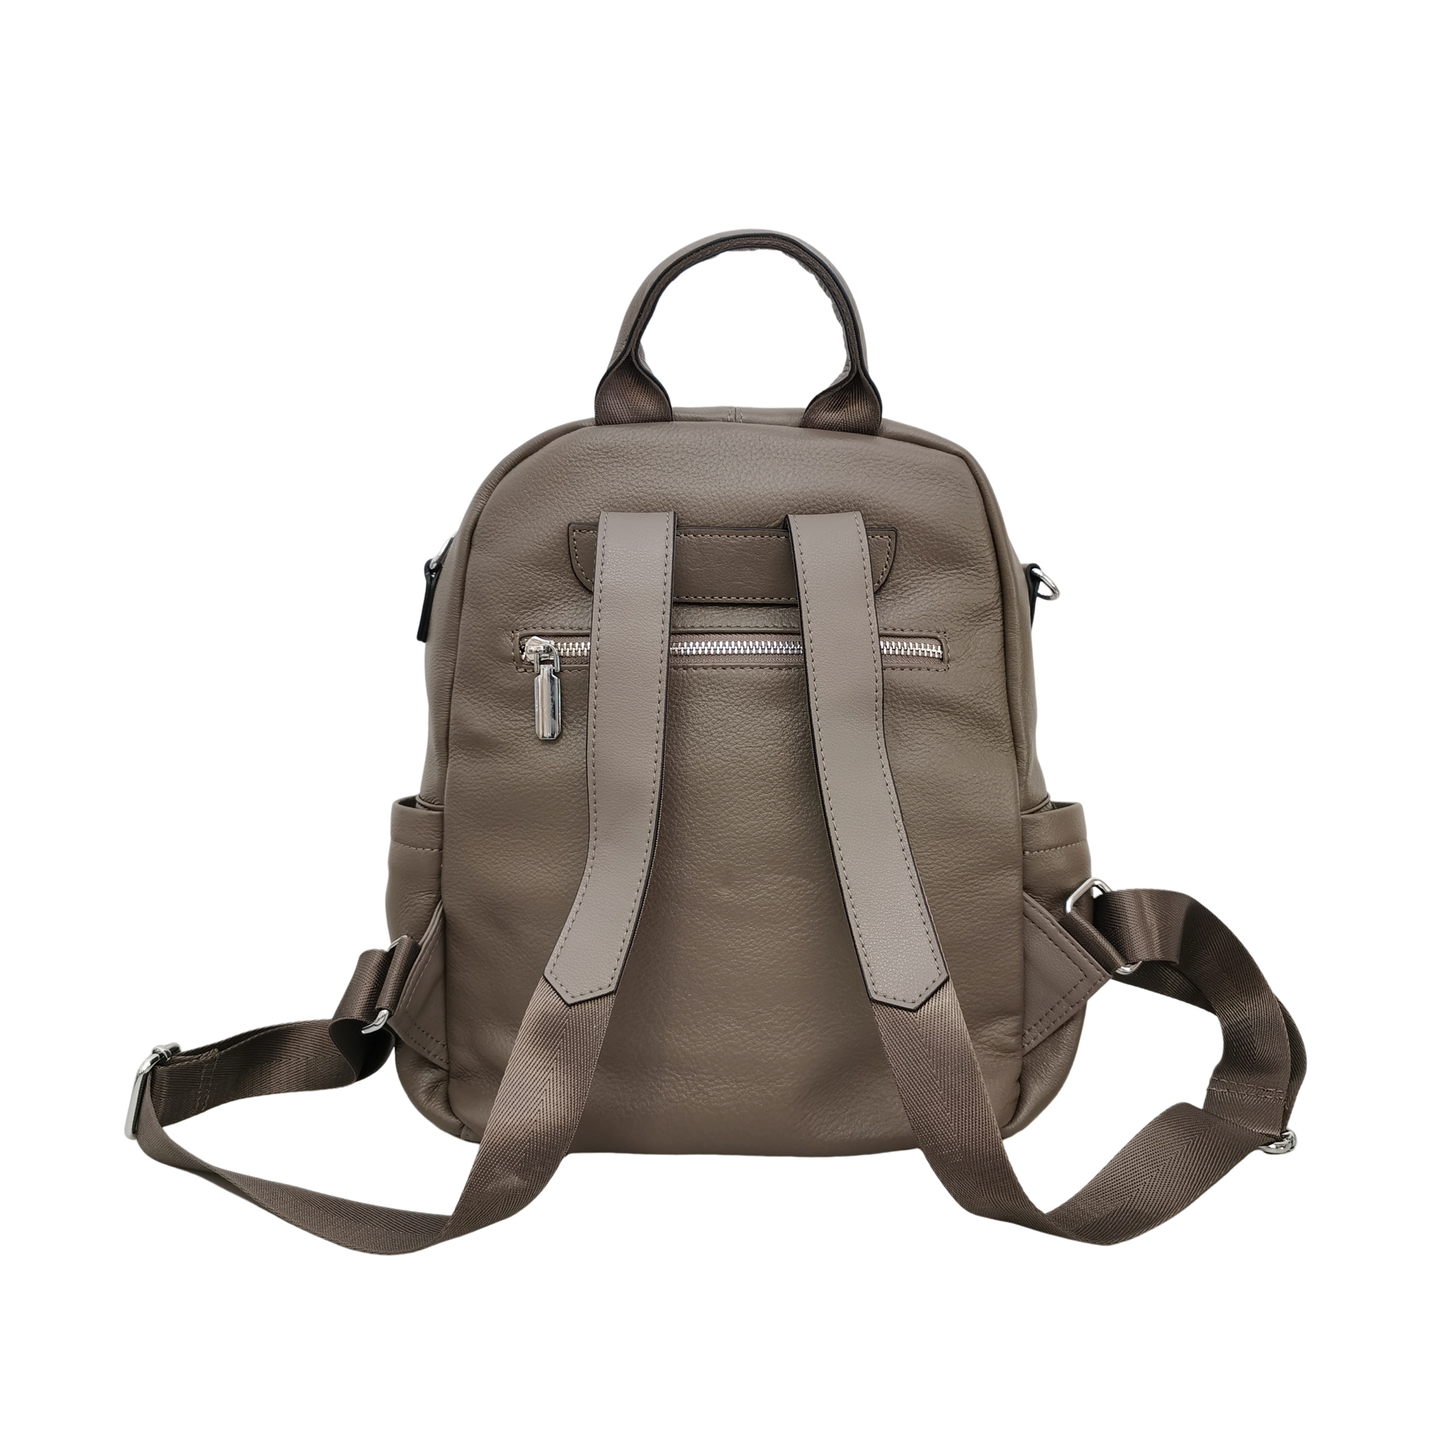 Women's multi zip cowhide leather backpack